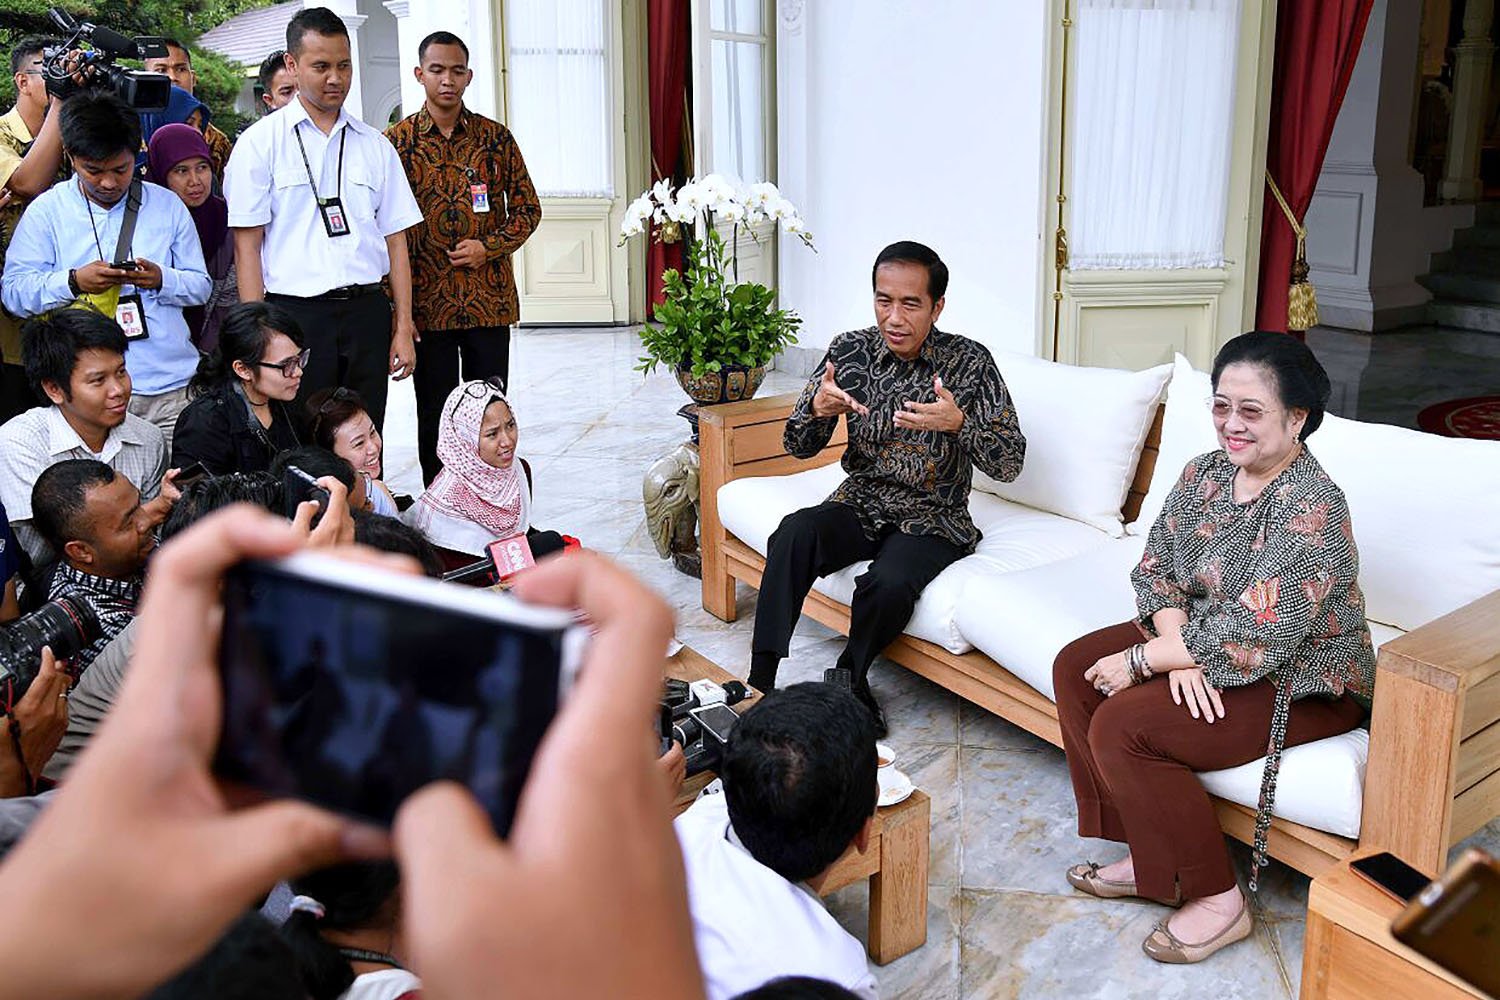 Presiden Joko Widodo menilai komunikasi seperti ini sangat efektif untuk menemukan solusi berbagai permasalahan bangsa, baik mengenai makroekonomi, politik hingga masalah sosial.